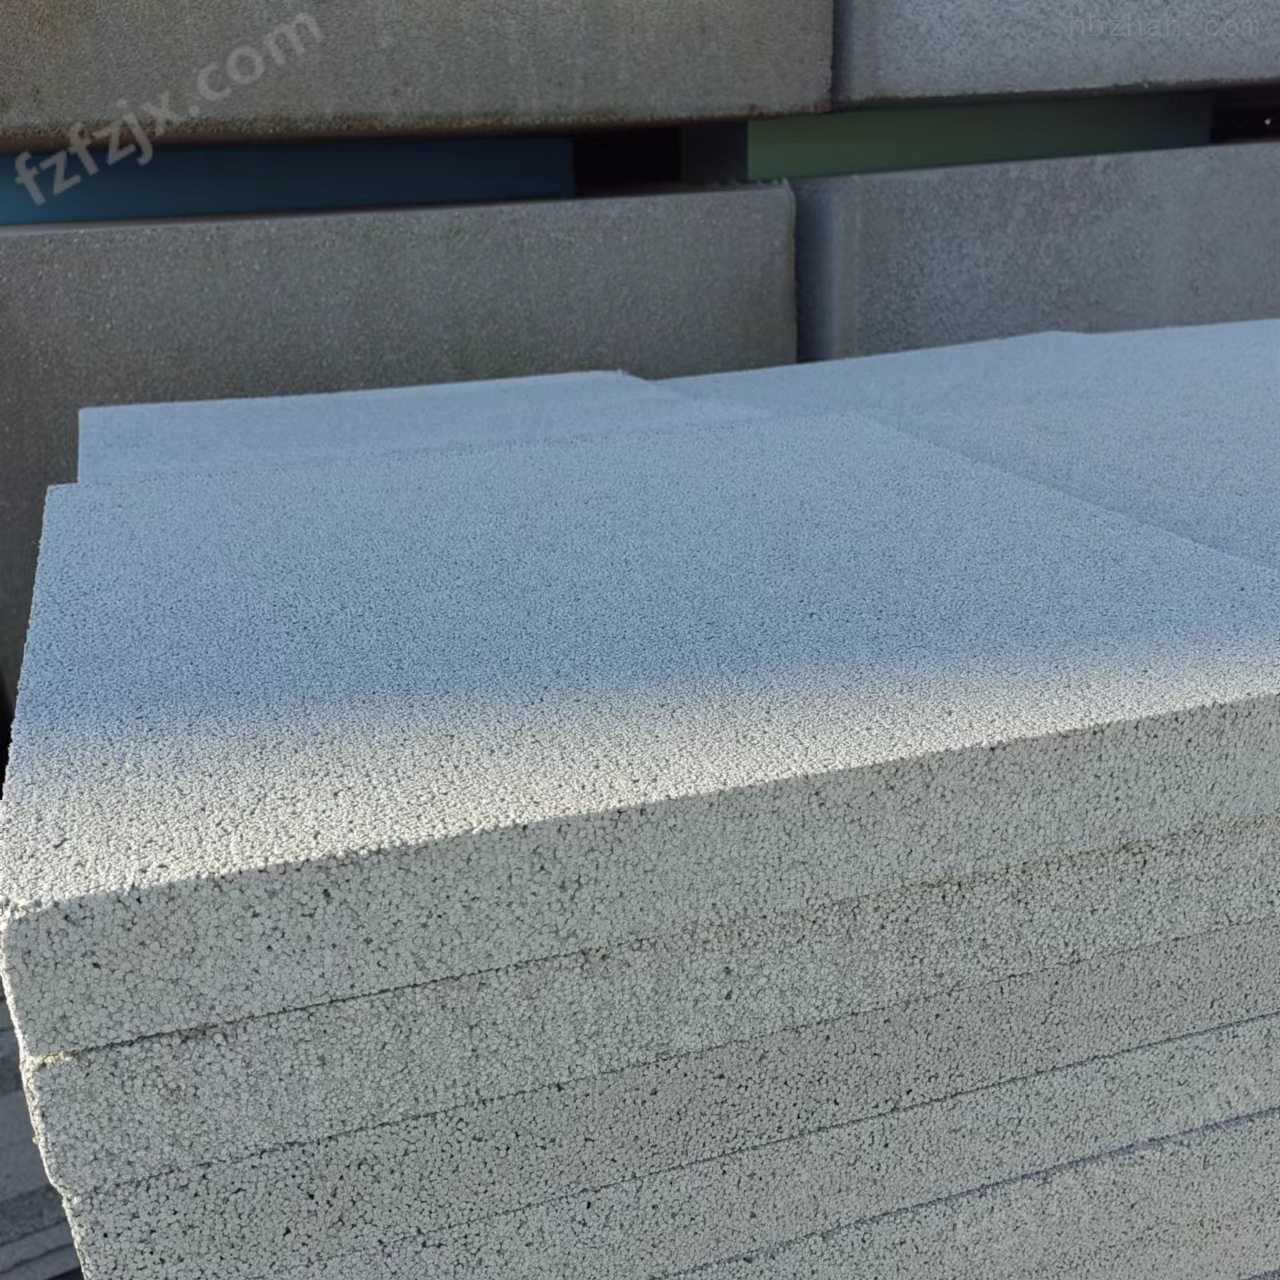 水泥基匀质聚苯板生产